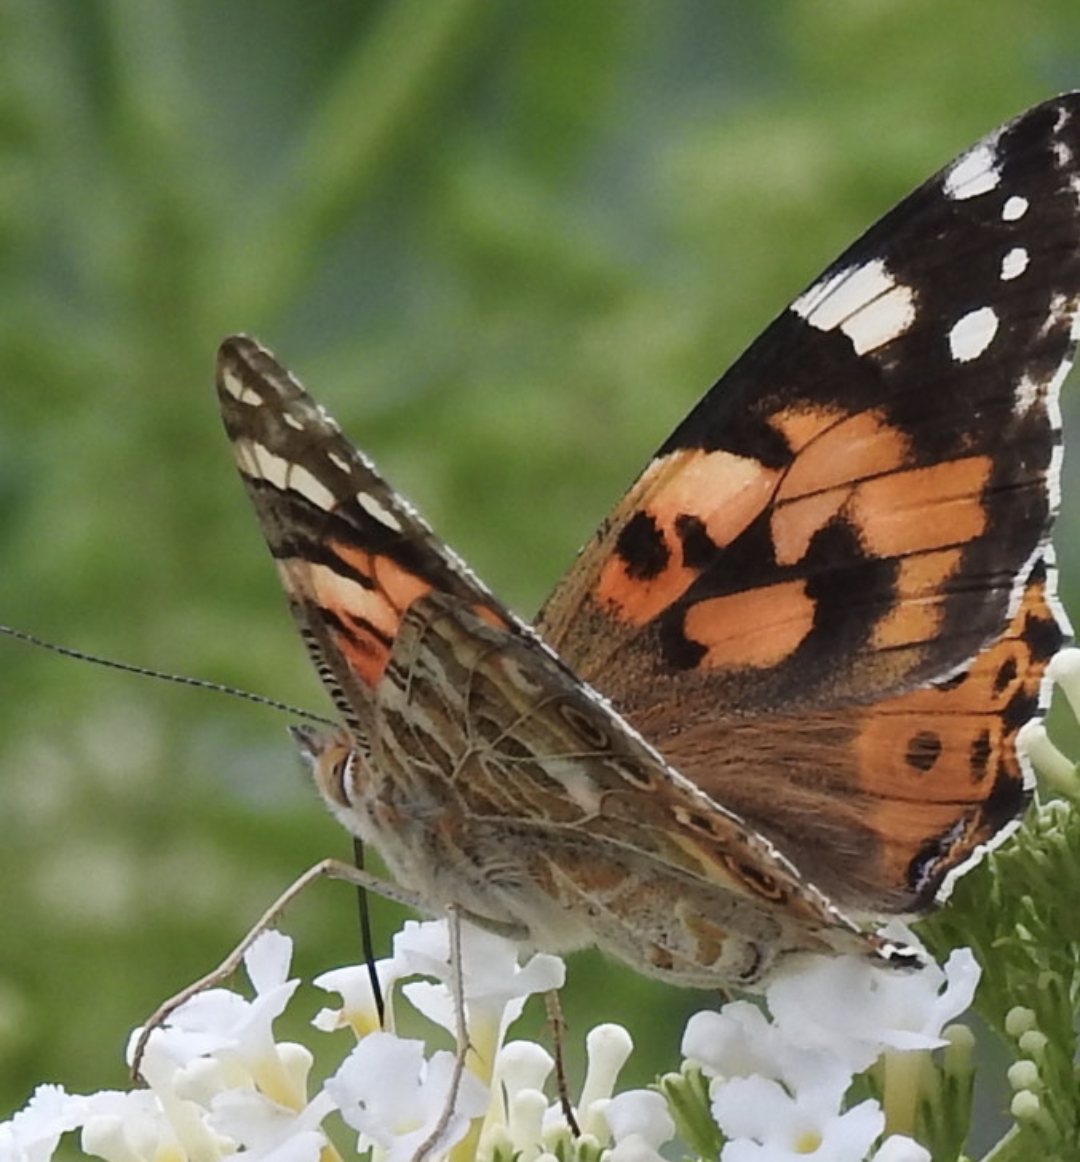 So ein wunderschöner Falter
#butterfly
#schmetterling
#herbst
#picoftheday
#pod